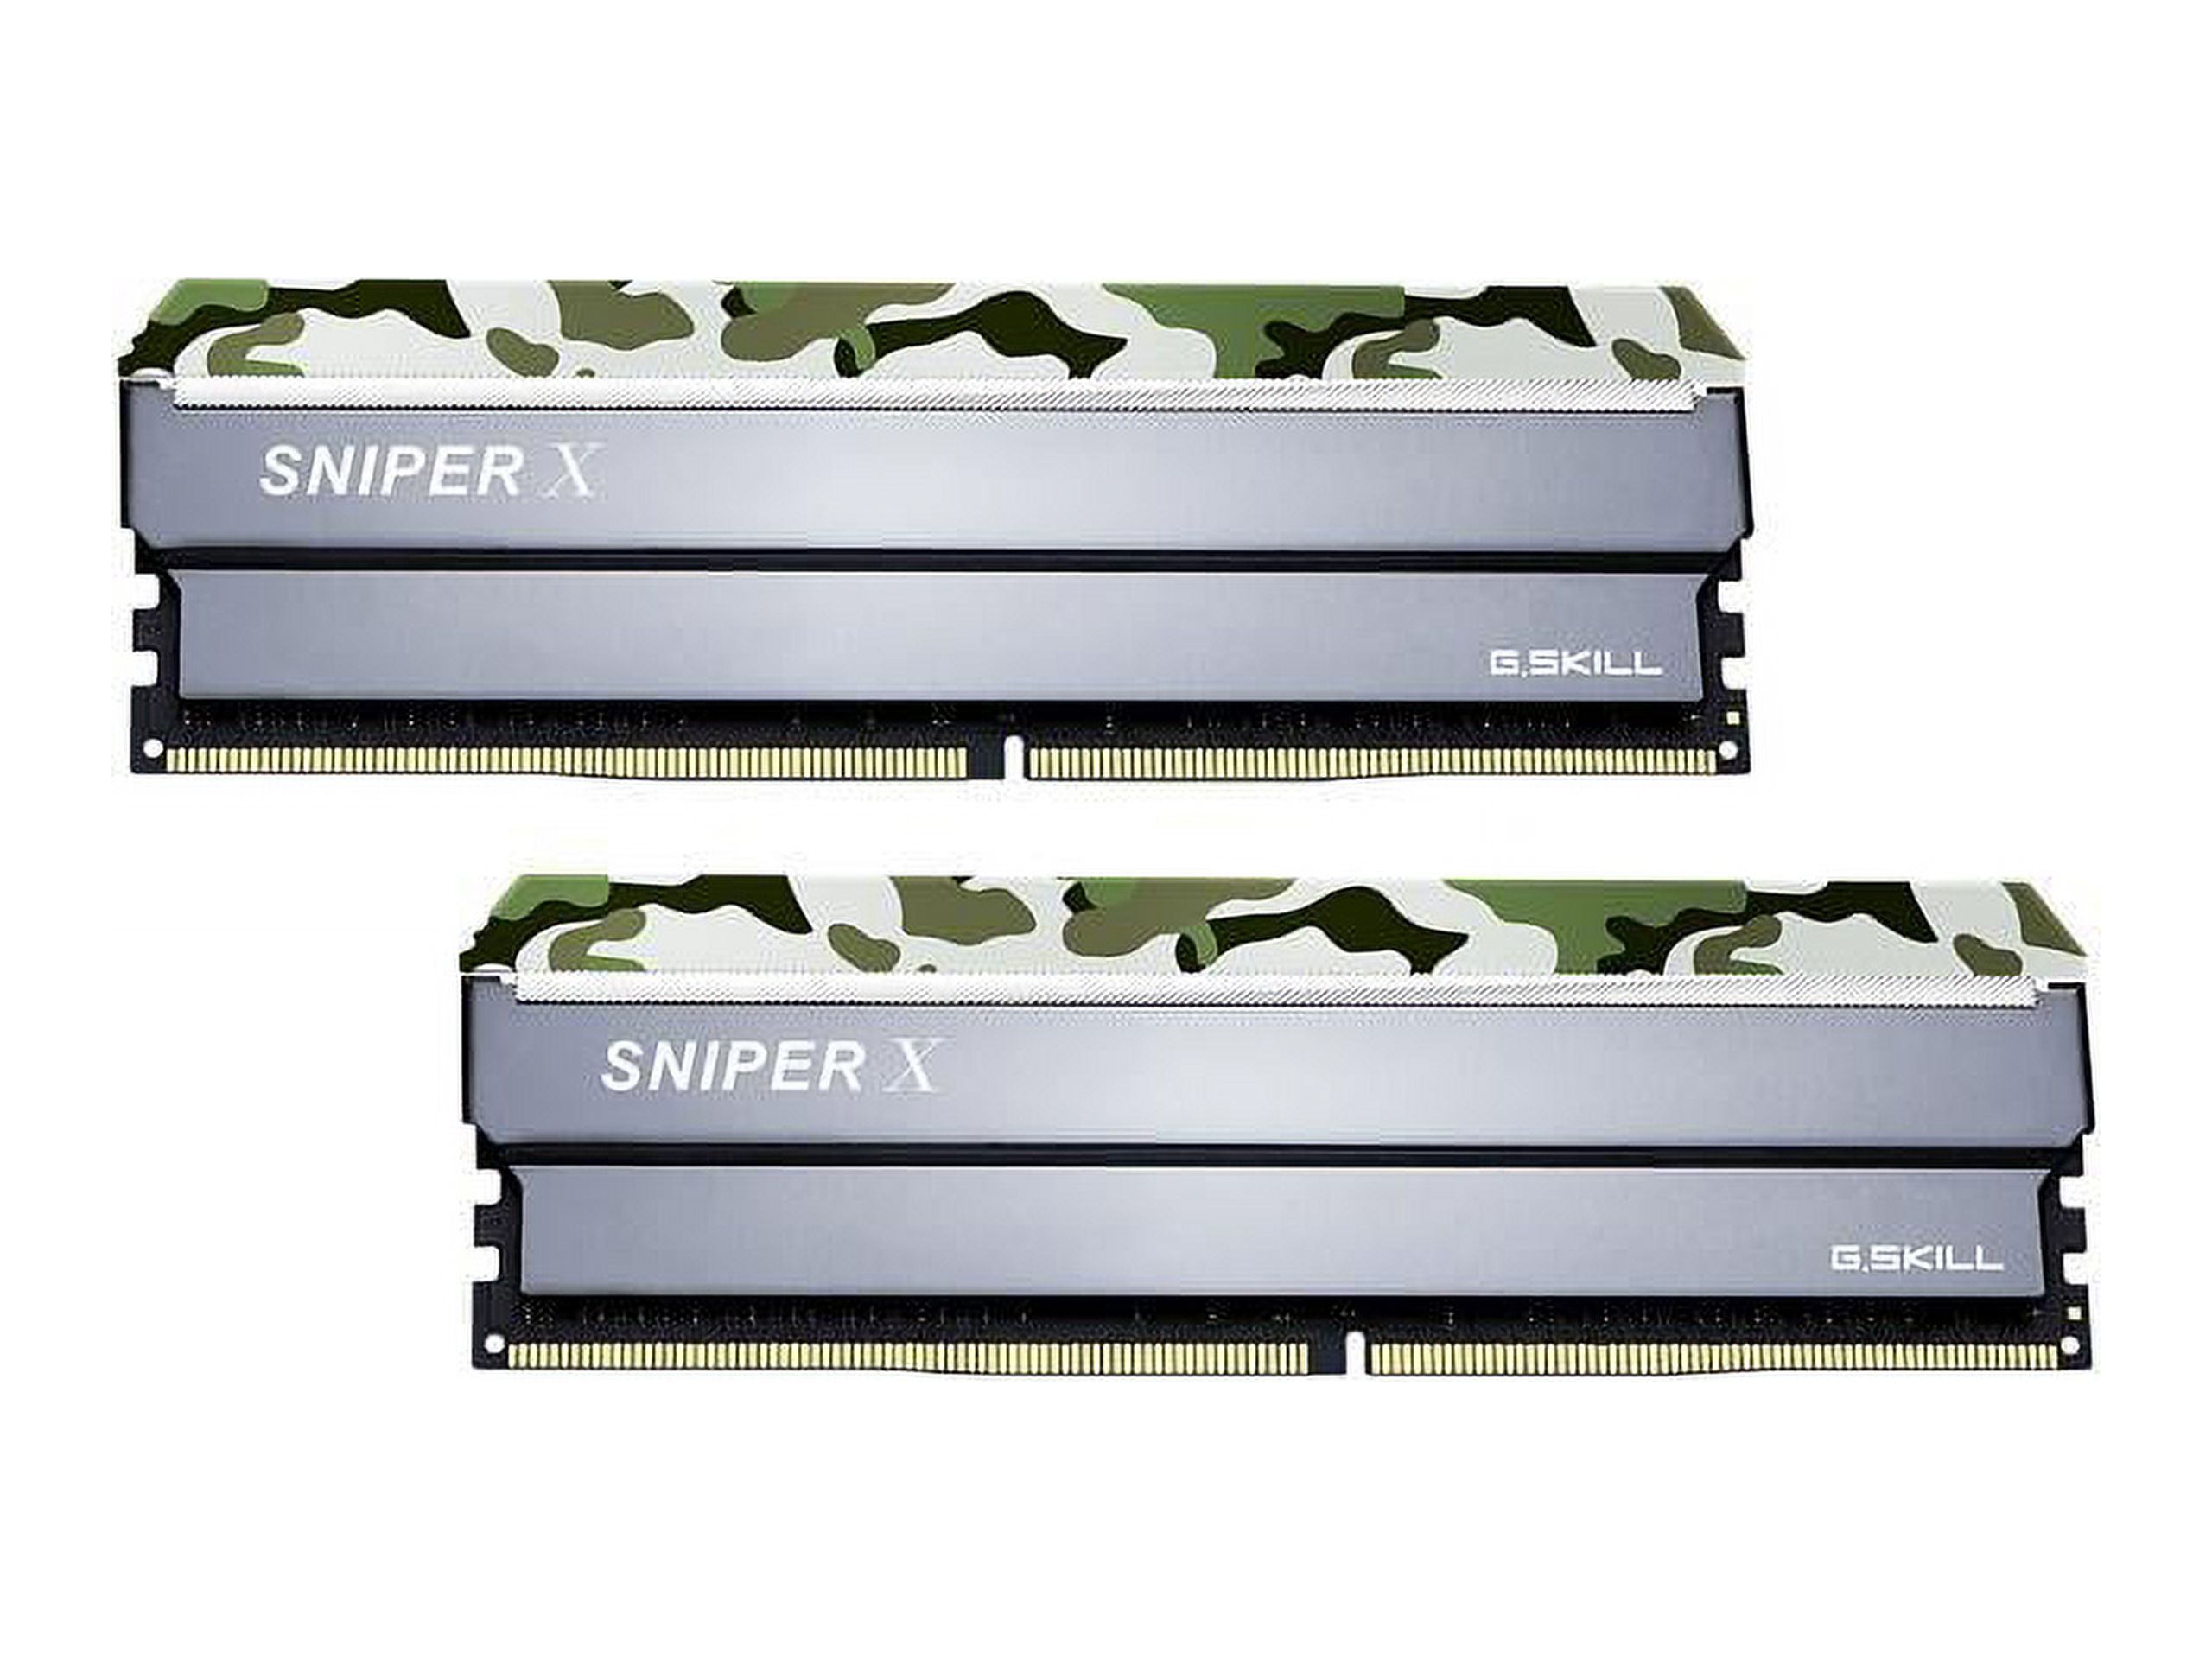 G.SKILL Sniper X Series 16GB (2 x 8GB) DDR4 3000 (PC4 24000) Desktop Memory Model F4-3000C16D-16GSXFB - image 1 of 4